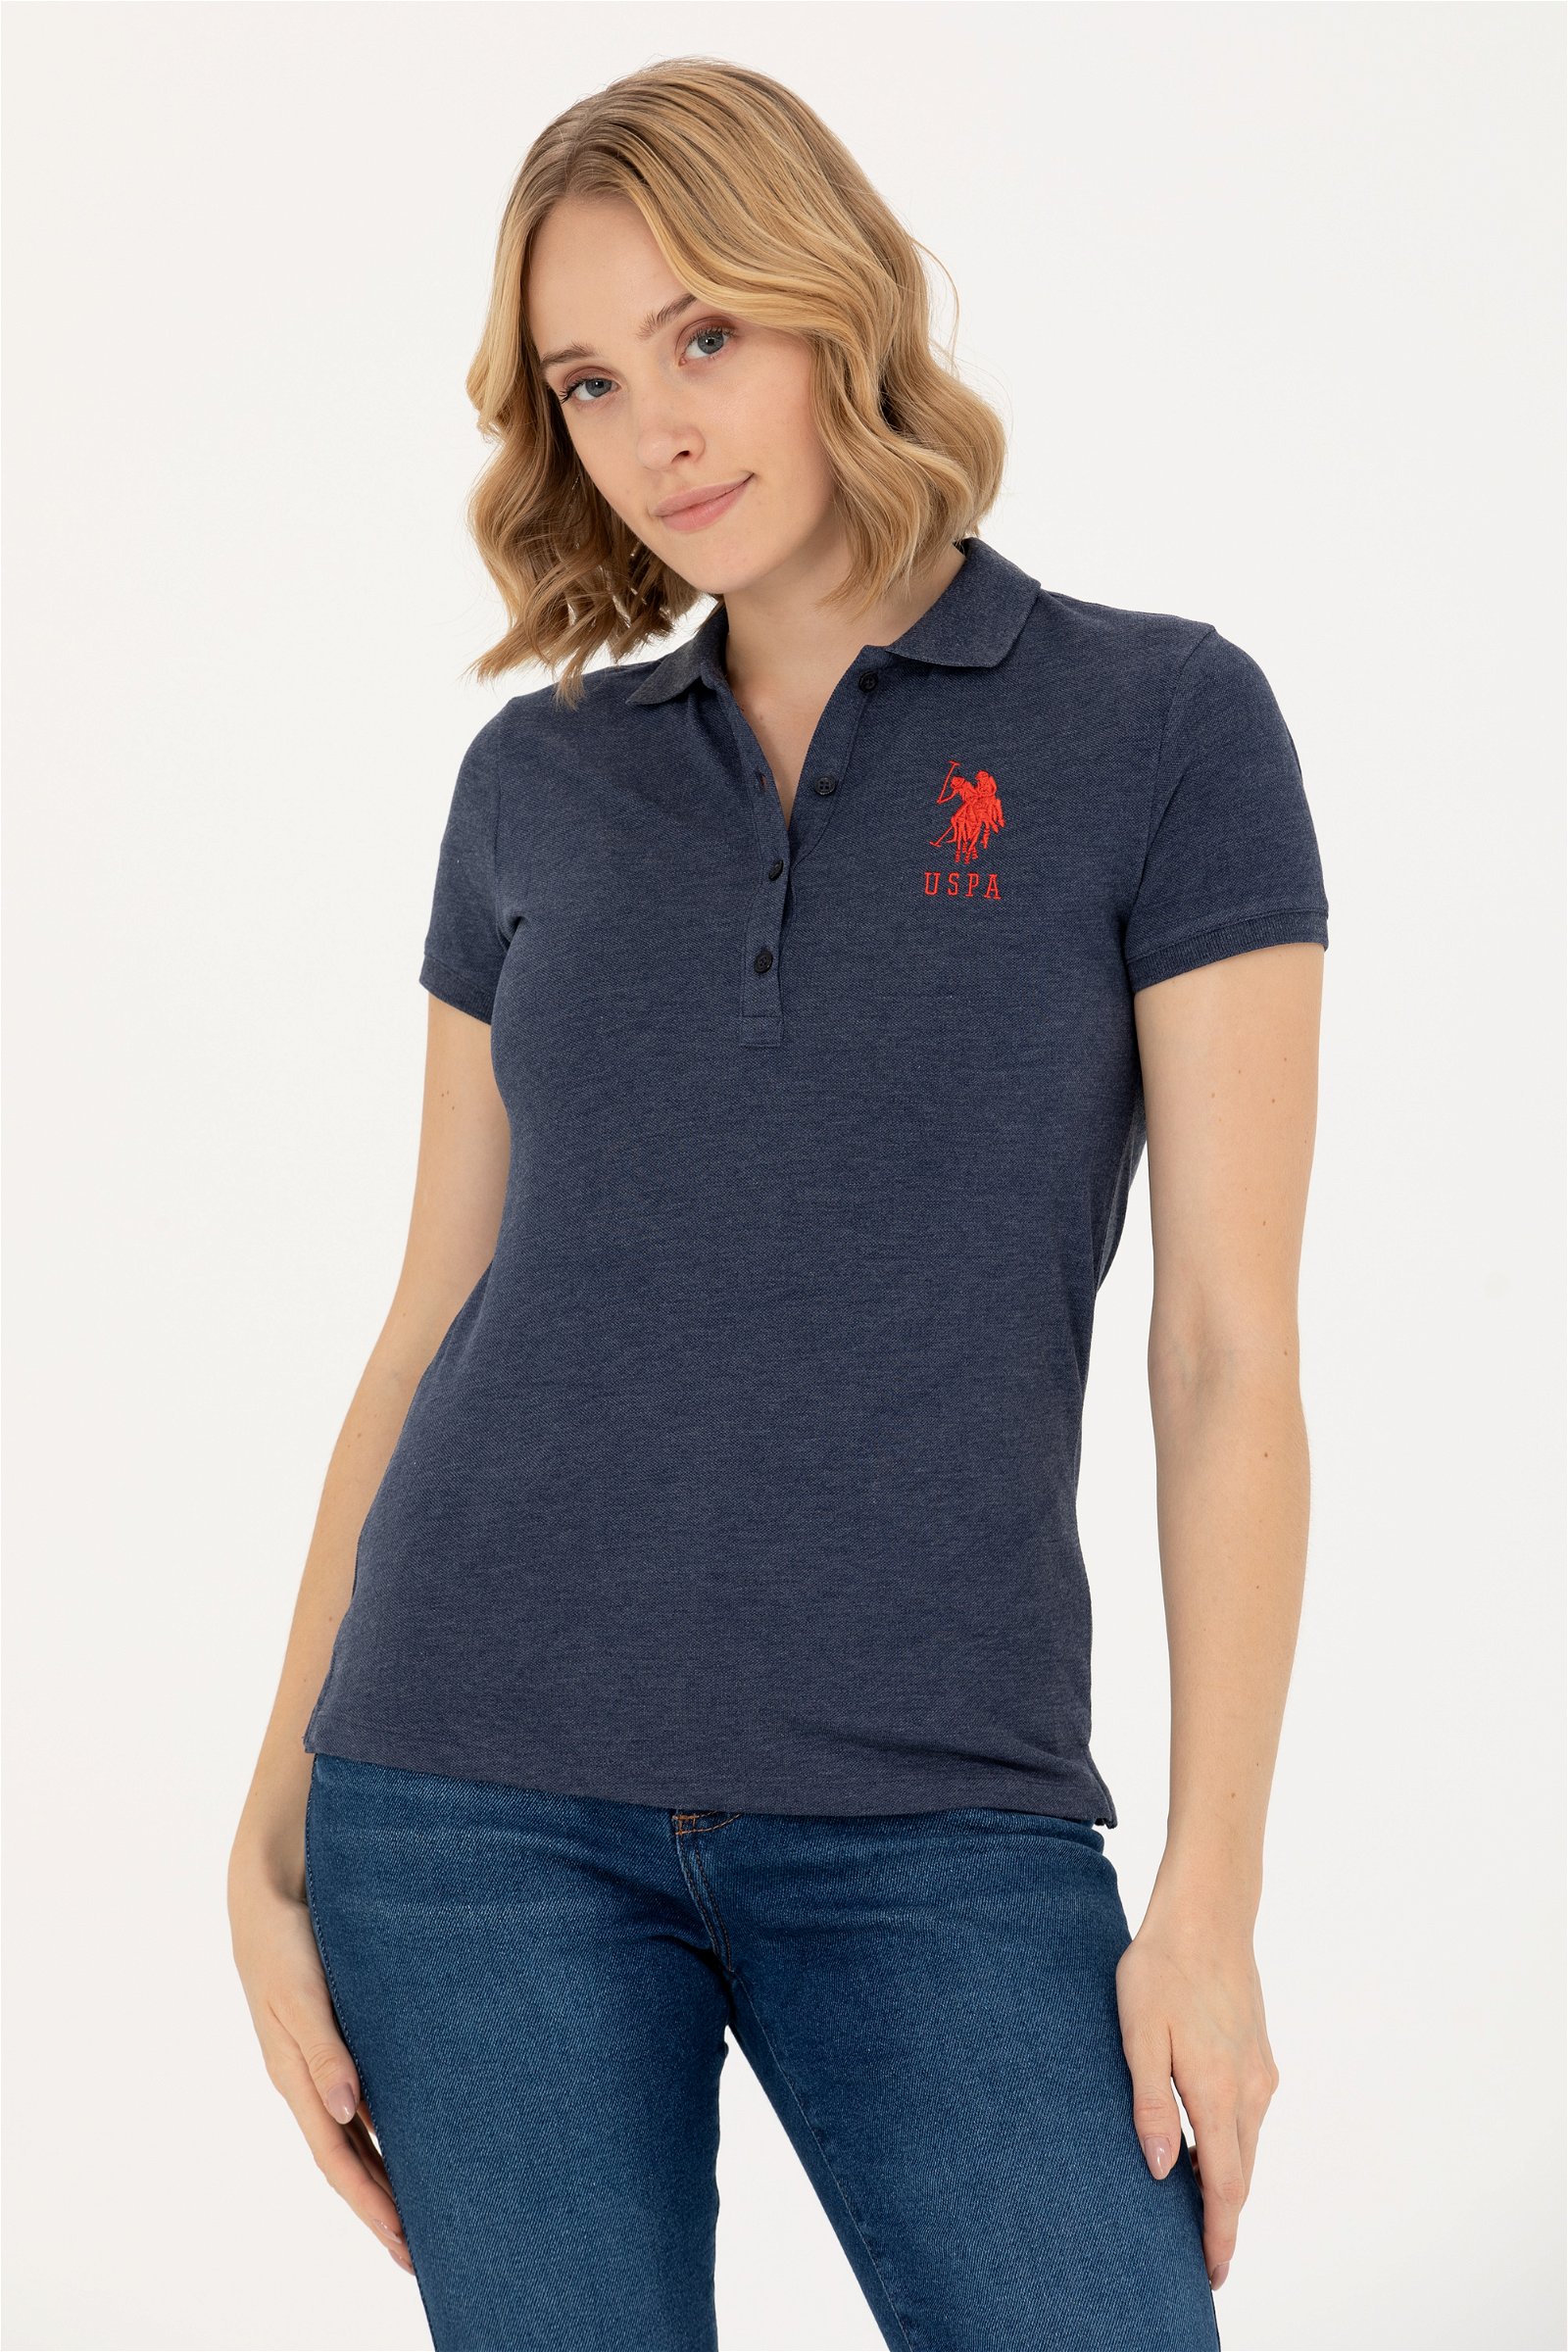 تی شرت  لاجورد  اندامی  زنانه یو اس پولو | US POLO ASSN